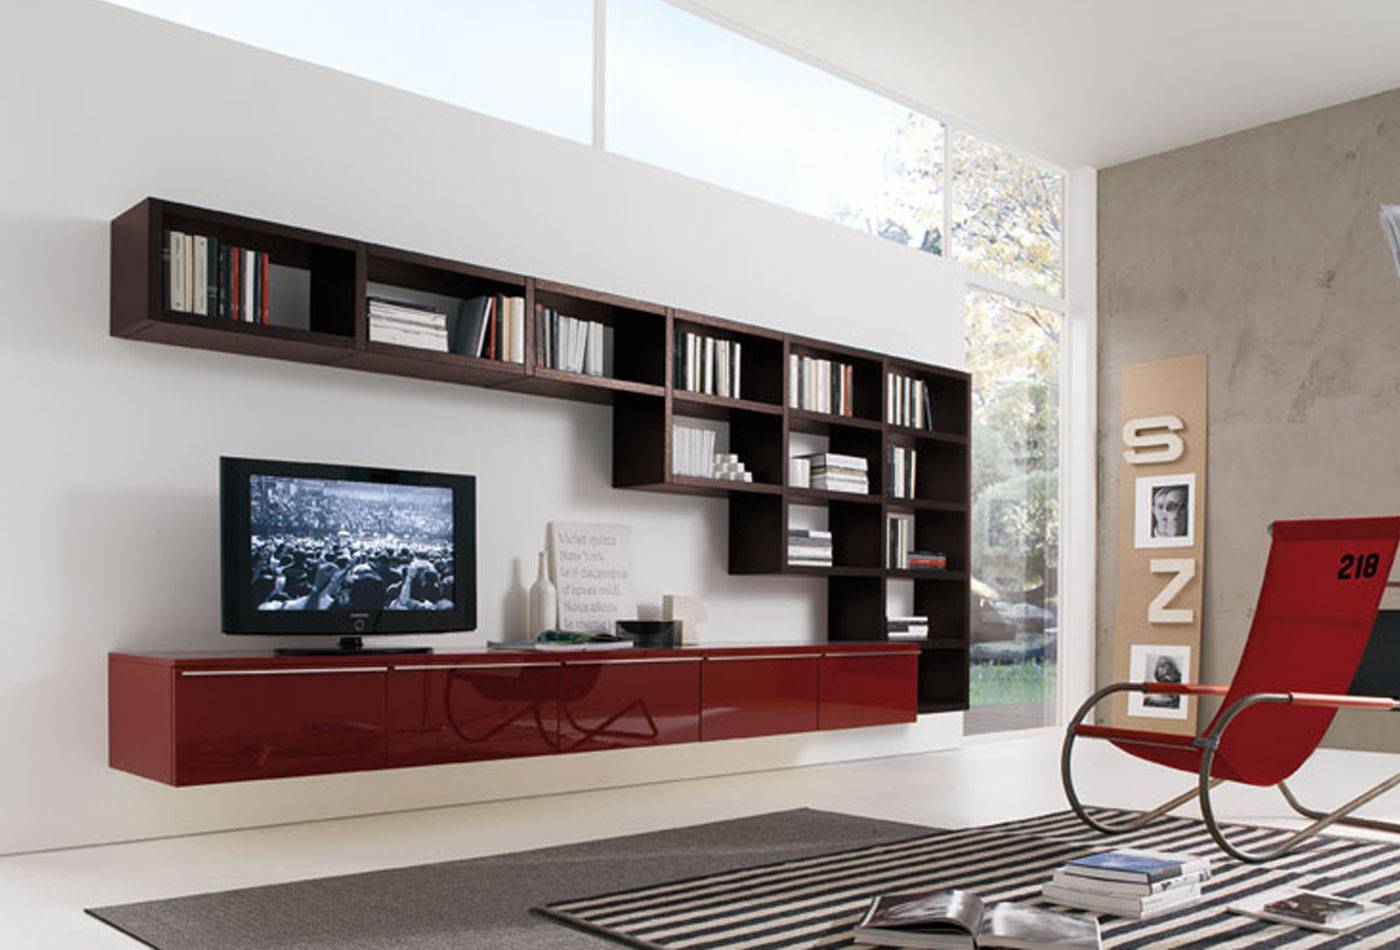 Стенка в гостиную (79 фото): выбираем красивые мебельные варианты из гипсокартона и встроенные модели с комодом для зала